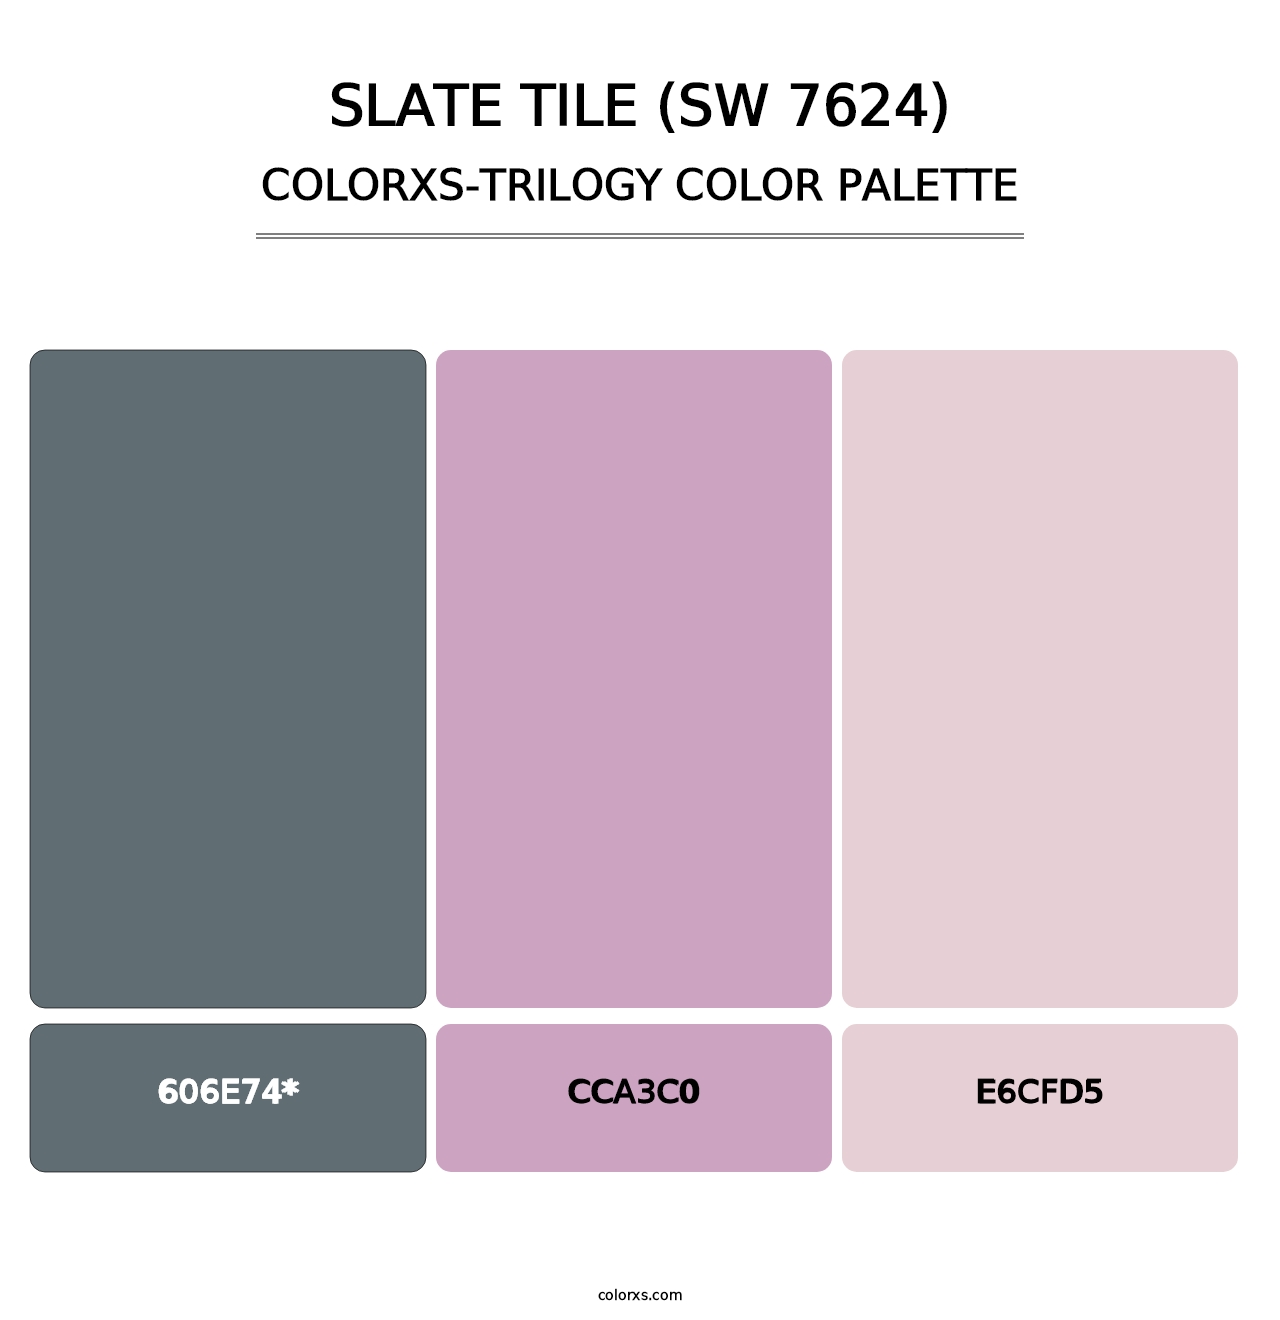 Slate Tile (SW 7624) - Colorxs Trilogy Palette